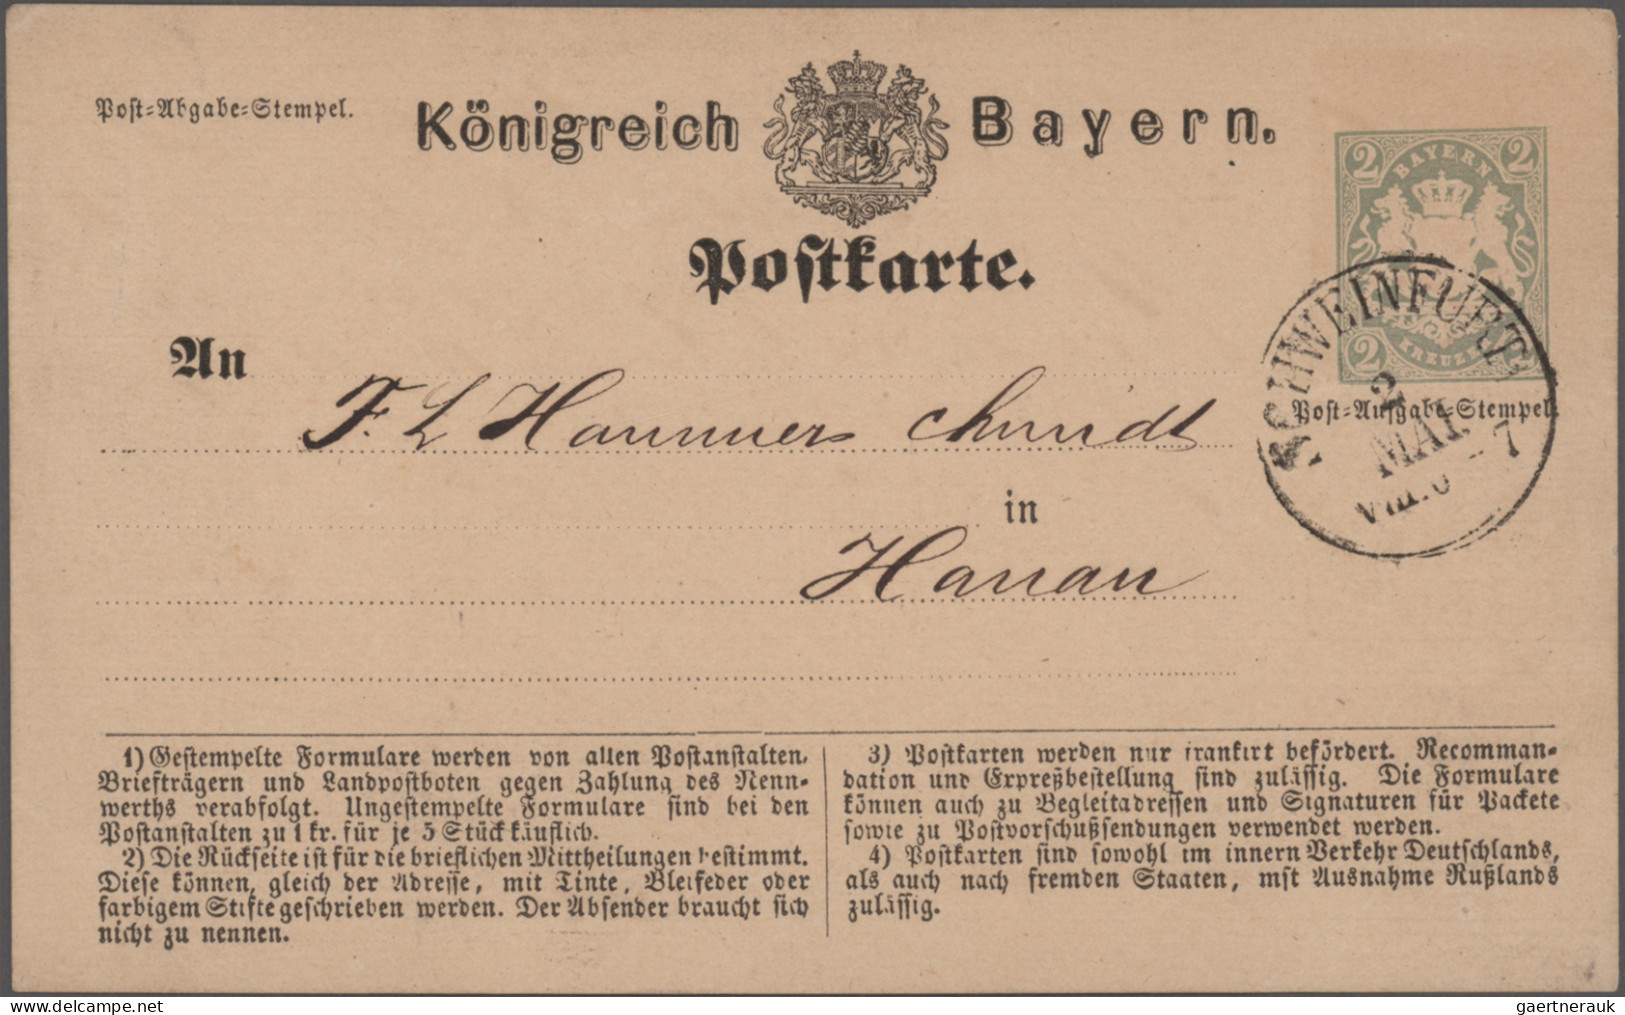 Bayern - Marken und Briefe: 1870/1876, Postkarten/"Correspondenz-Karten", spezia